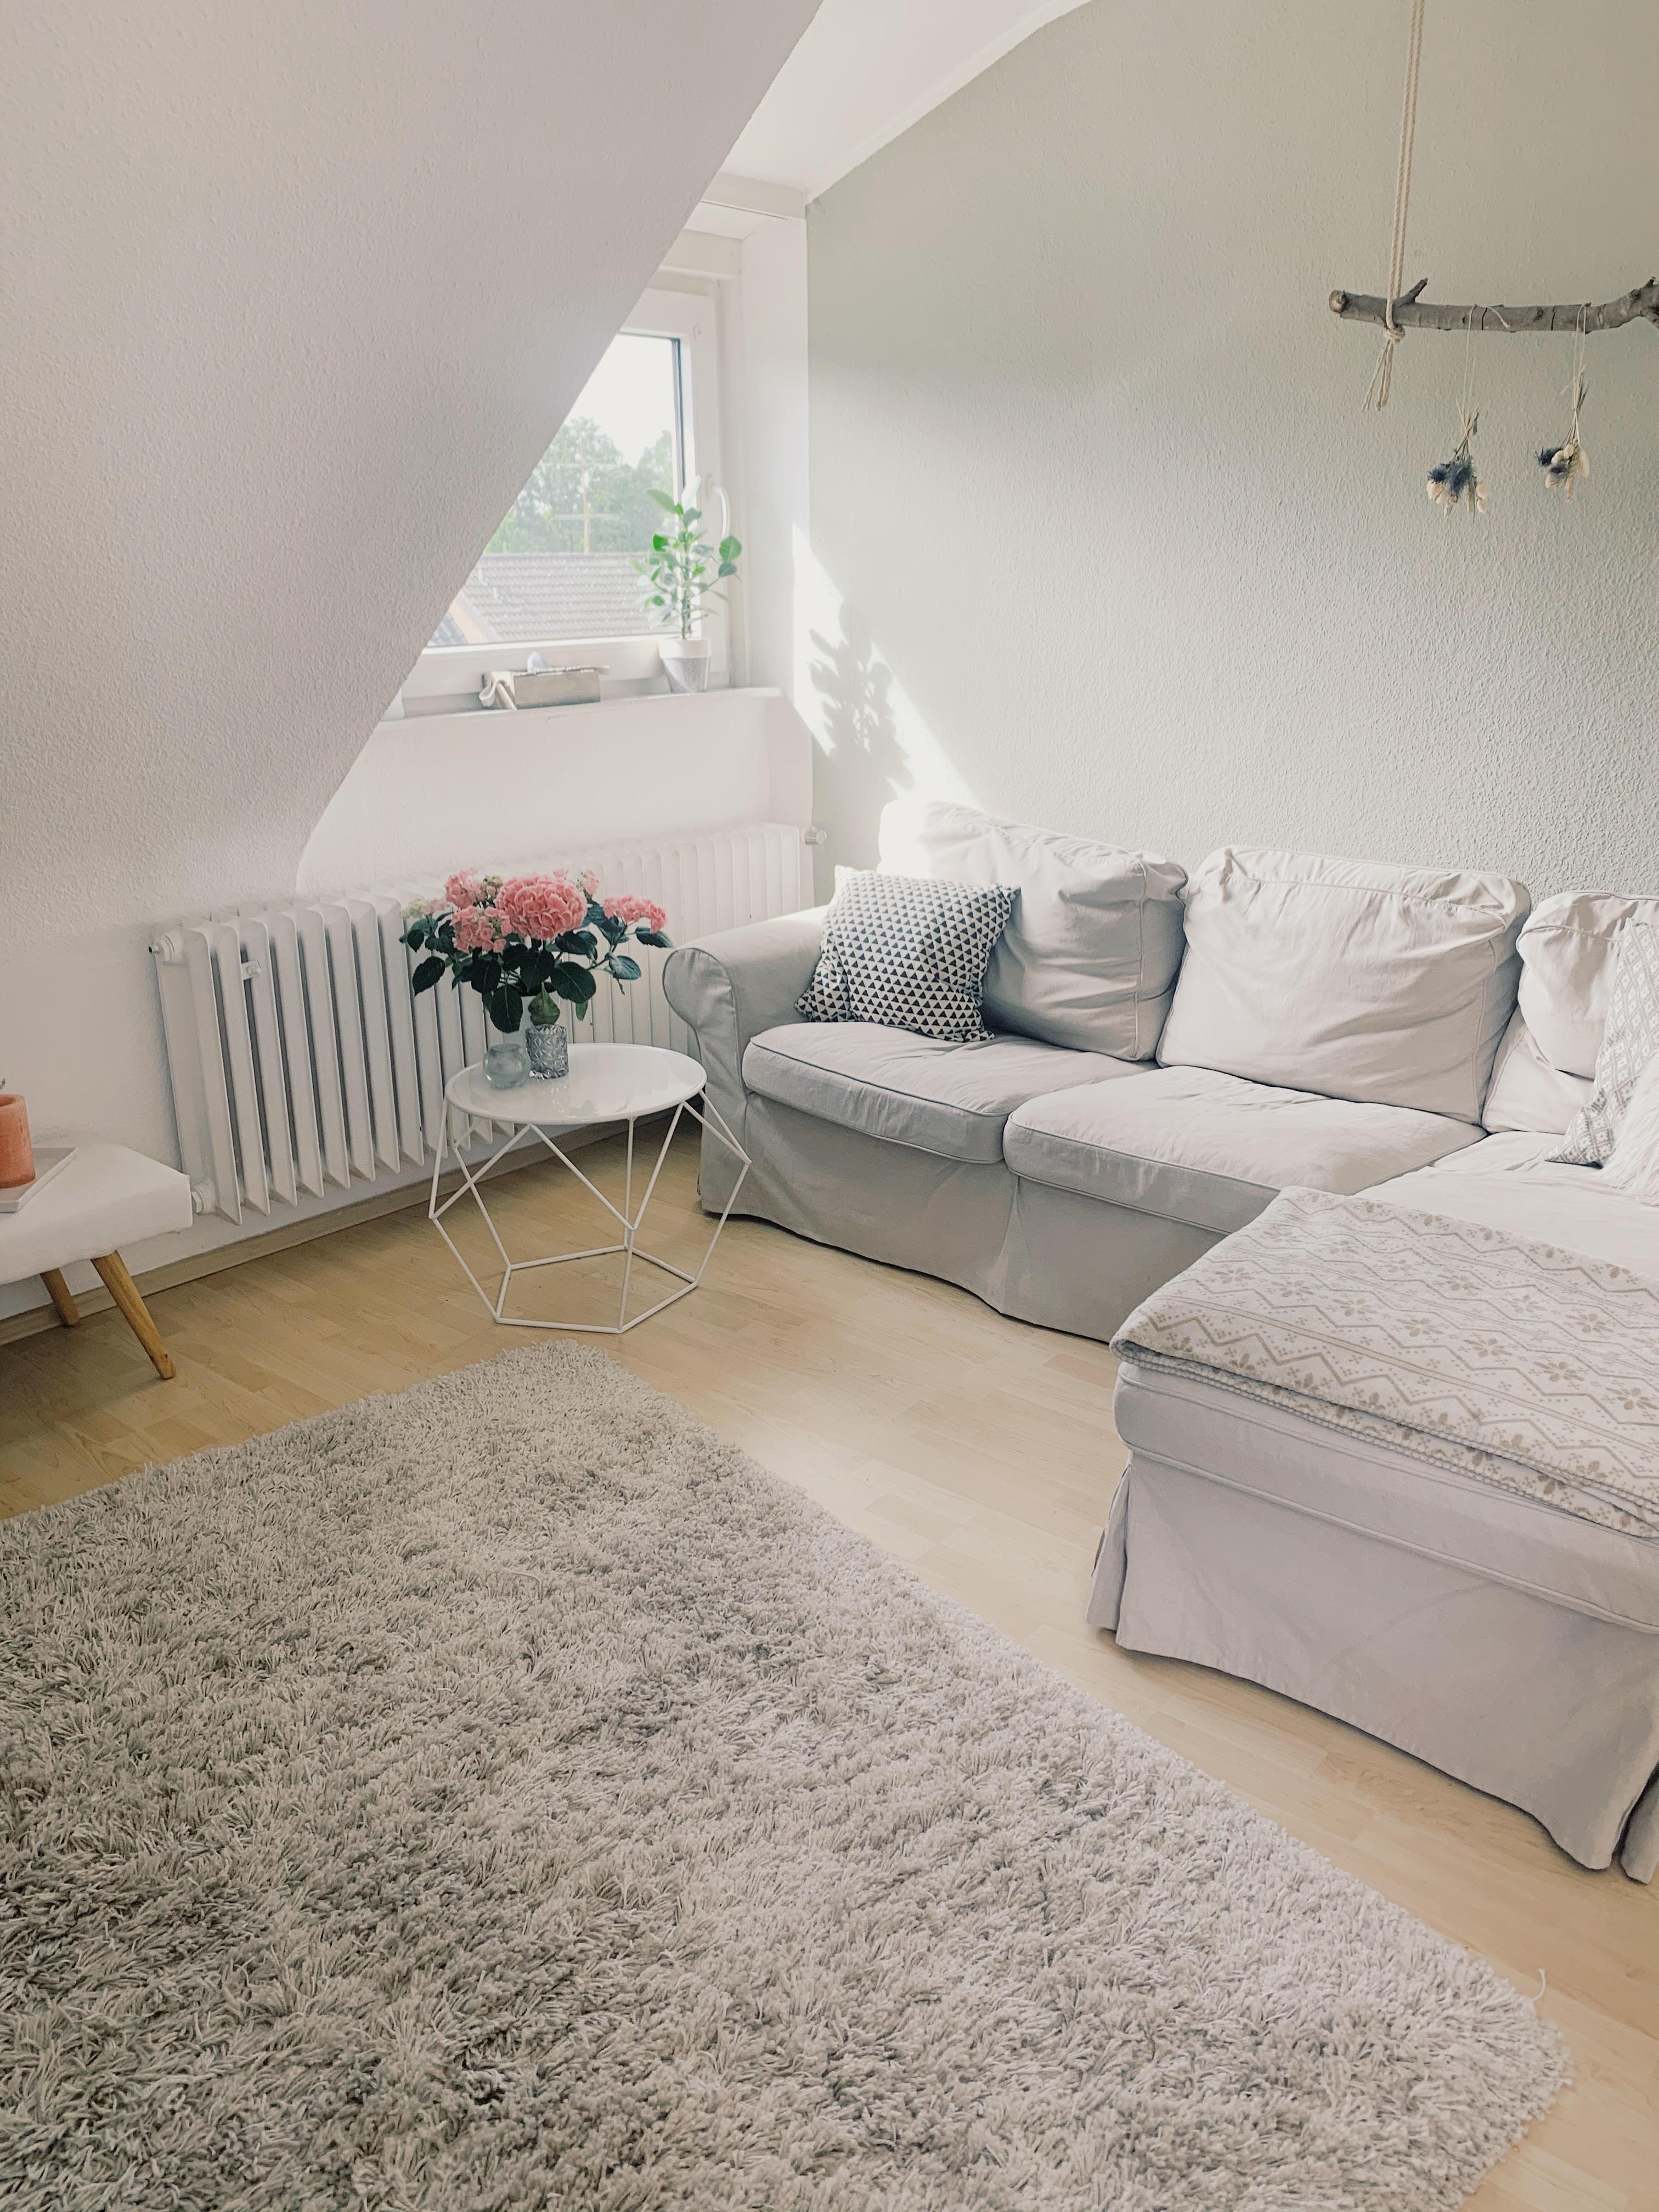 #wohnzimmer #couch #natürlichefarben #skandistyle #hortensie #astdekoration